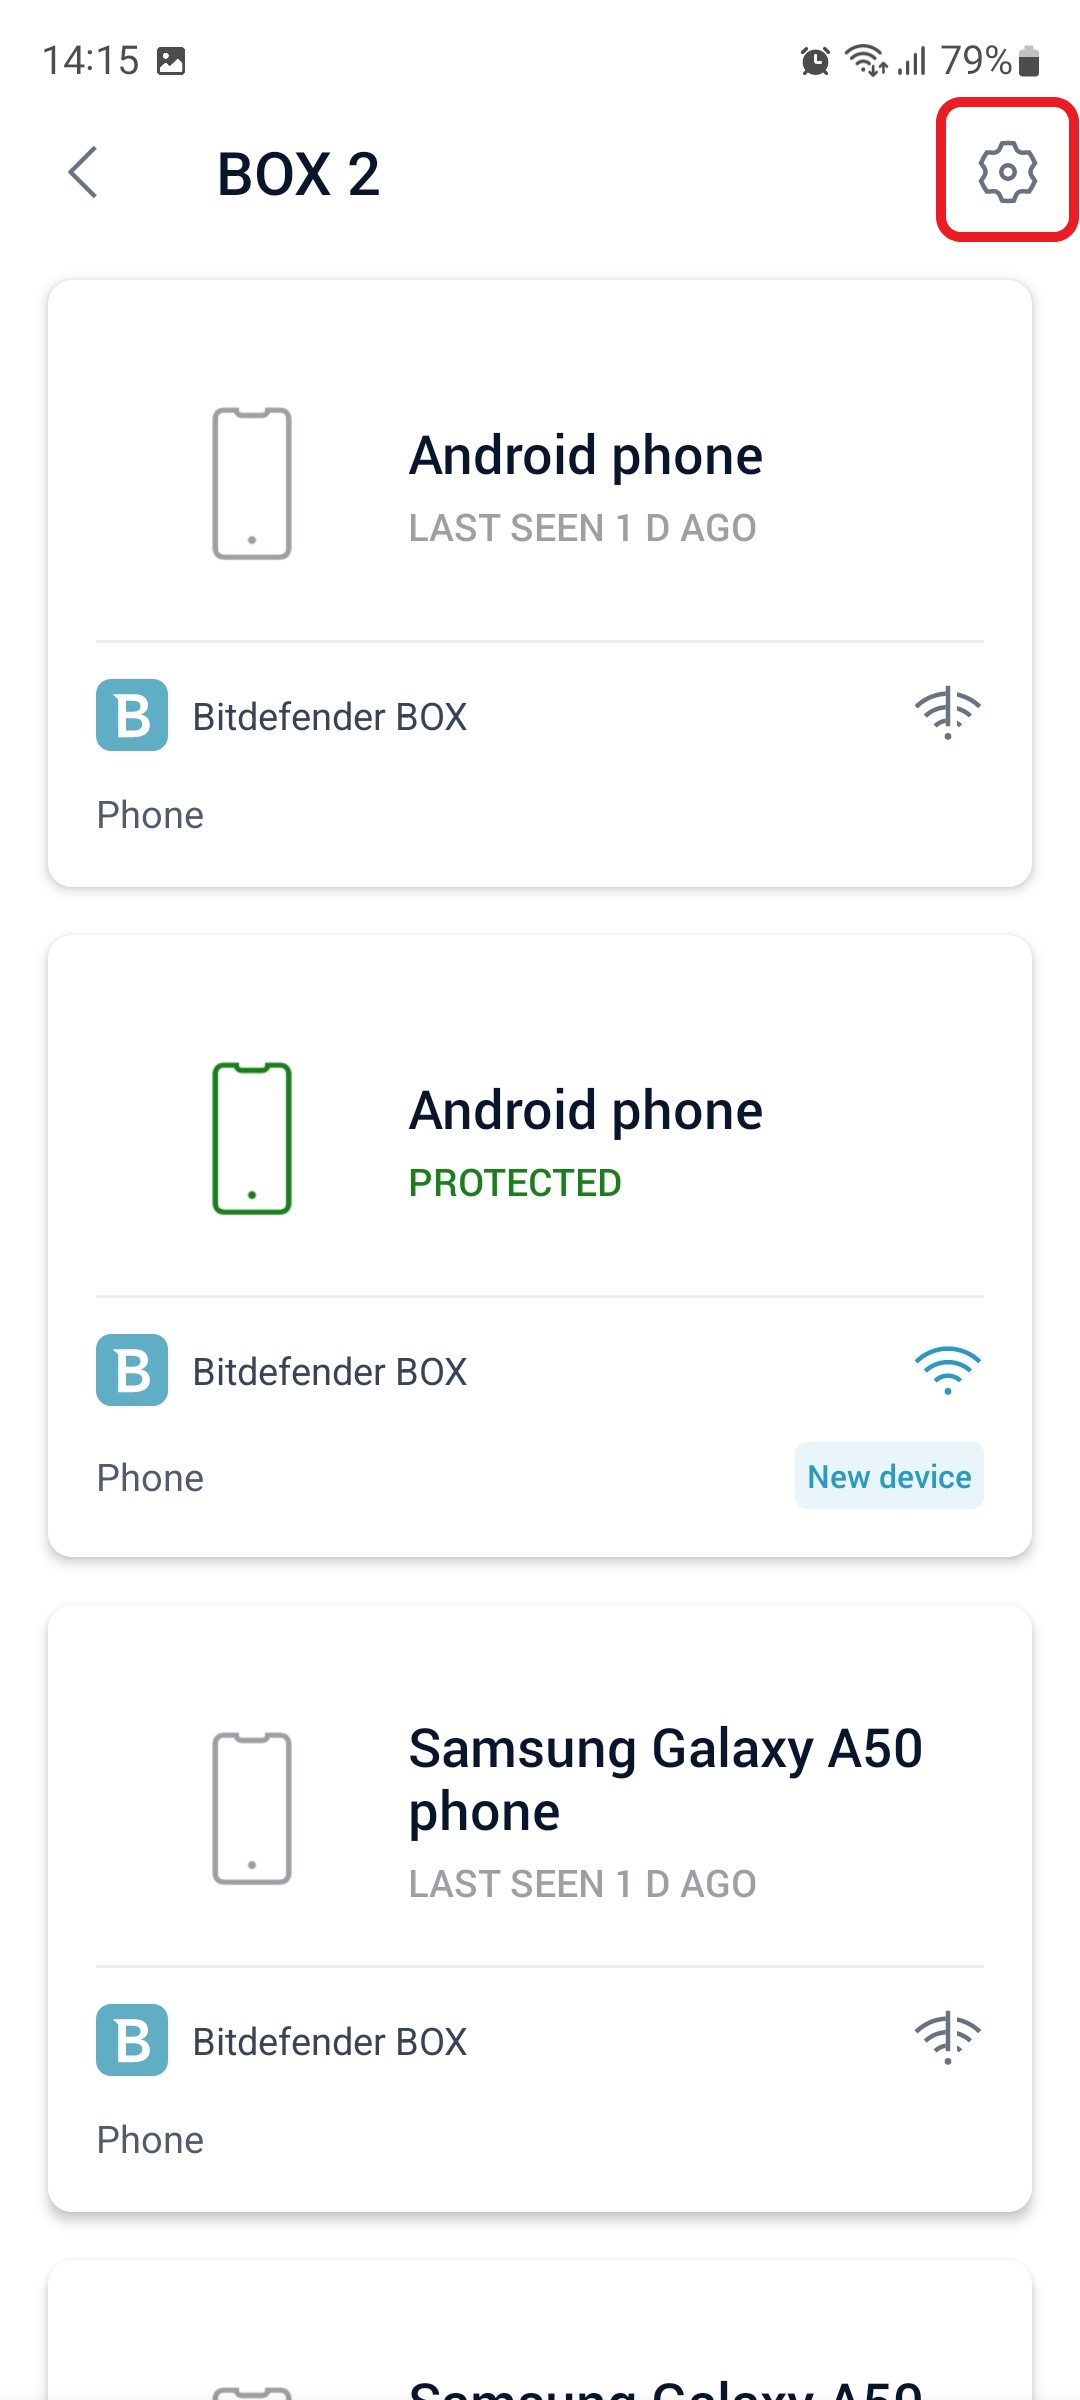 Cun se poate dezactiva Wi-Fi pe Bitdefender BOX